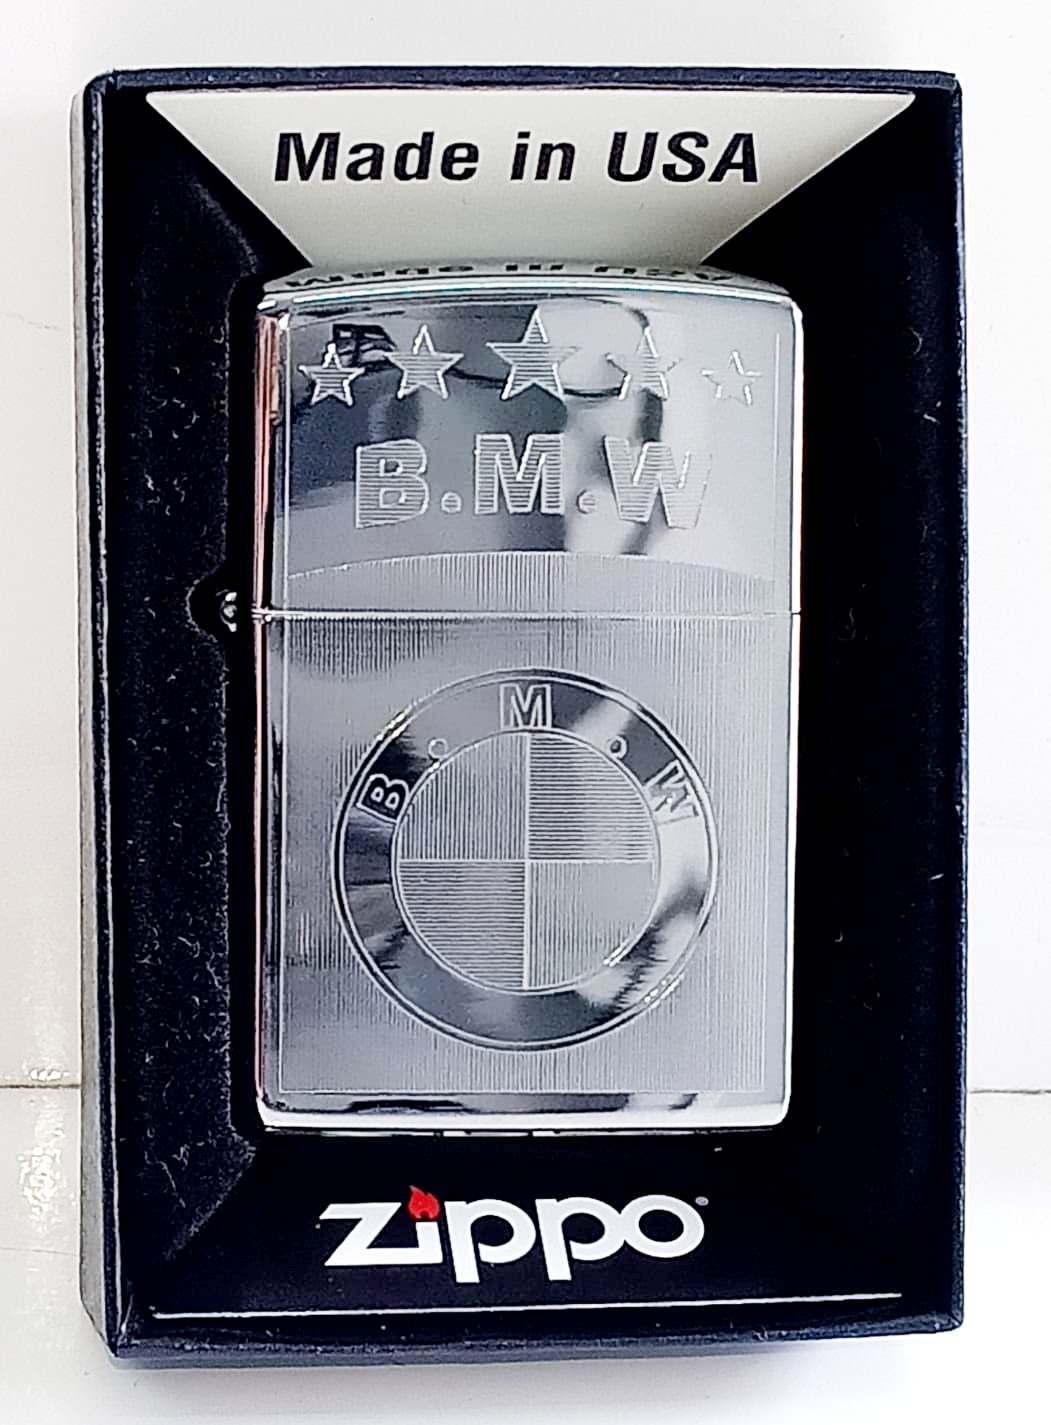 Zippo bong trang khac 1 mat B.M.W Z708